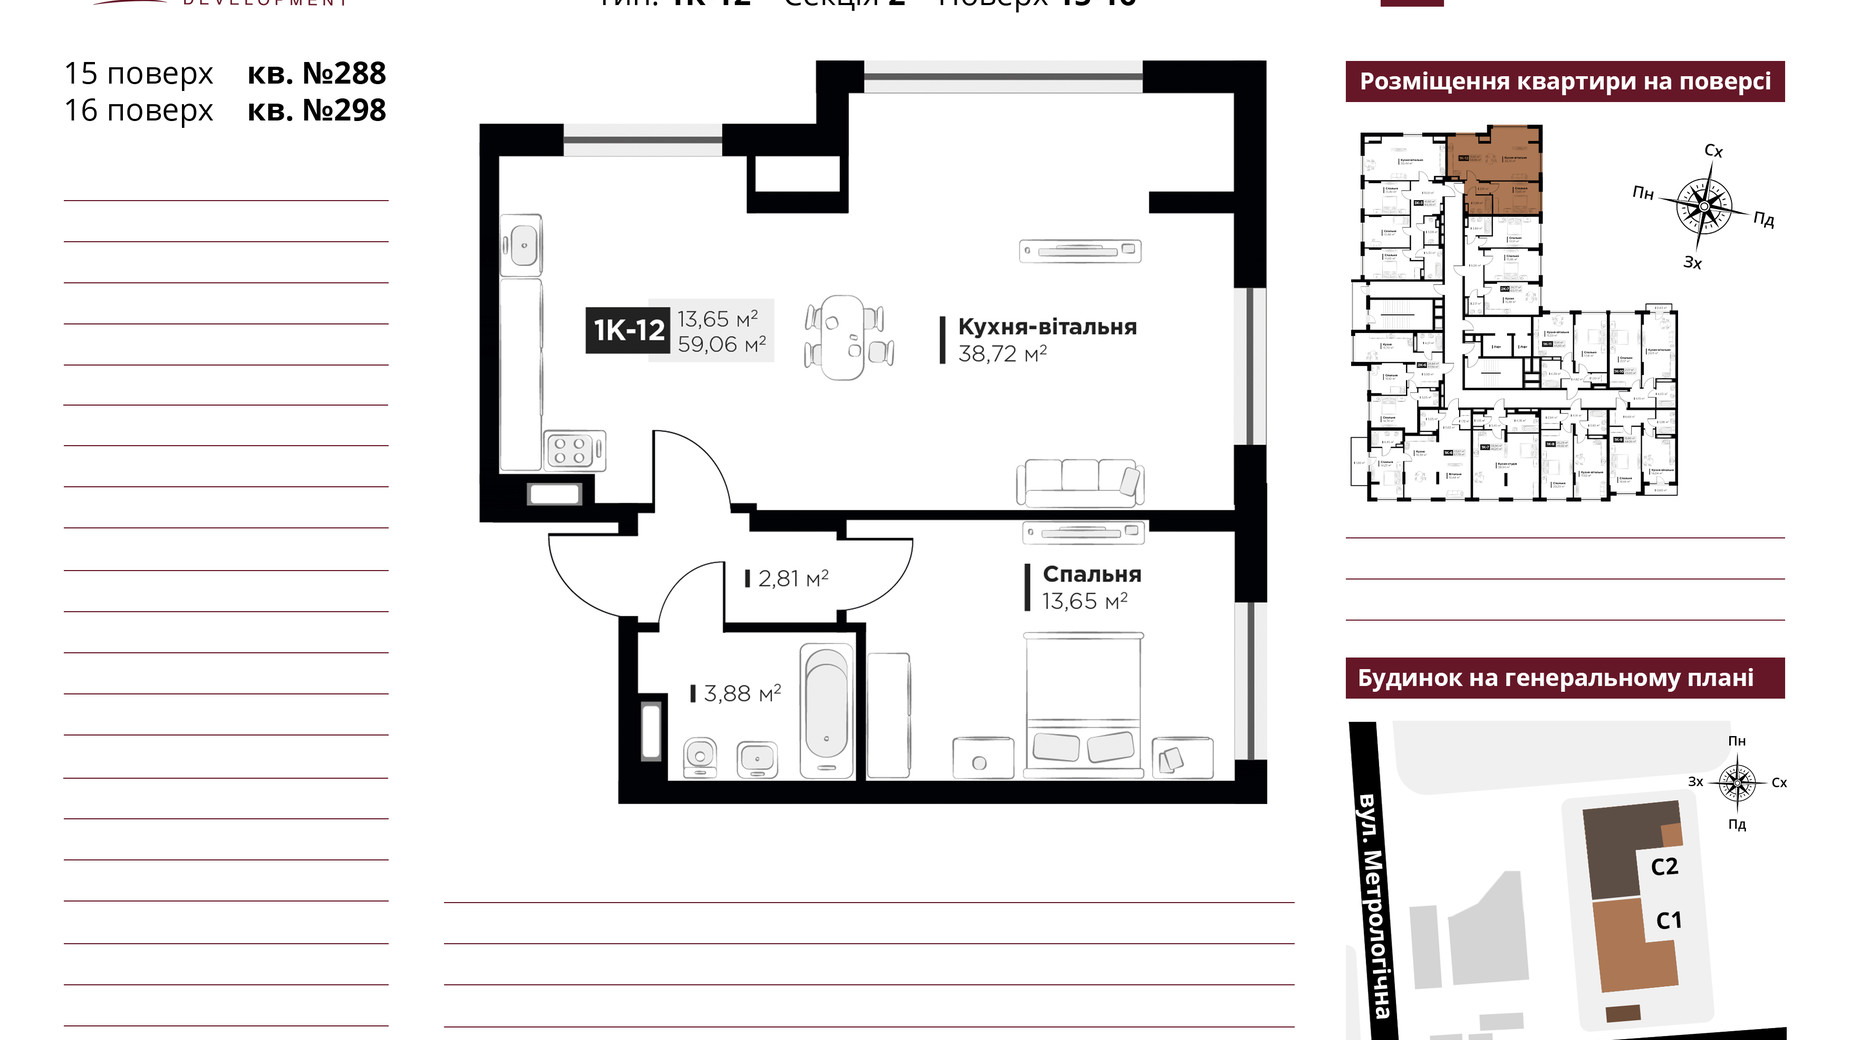 Планировка 2-комнатной квартиры в ЖК Life Story 59.06 м², фото 651110